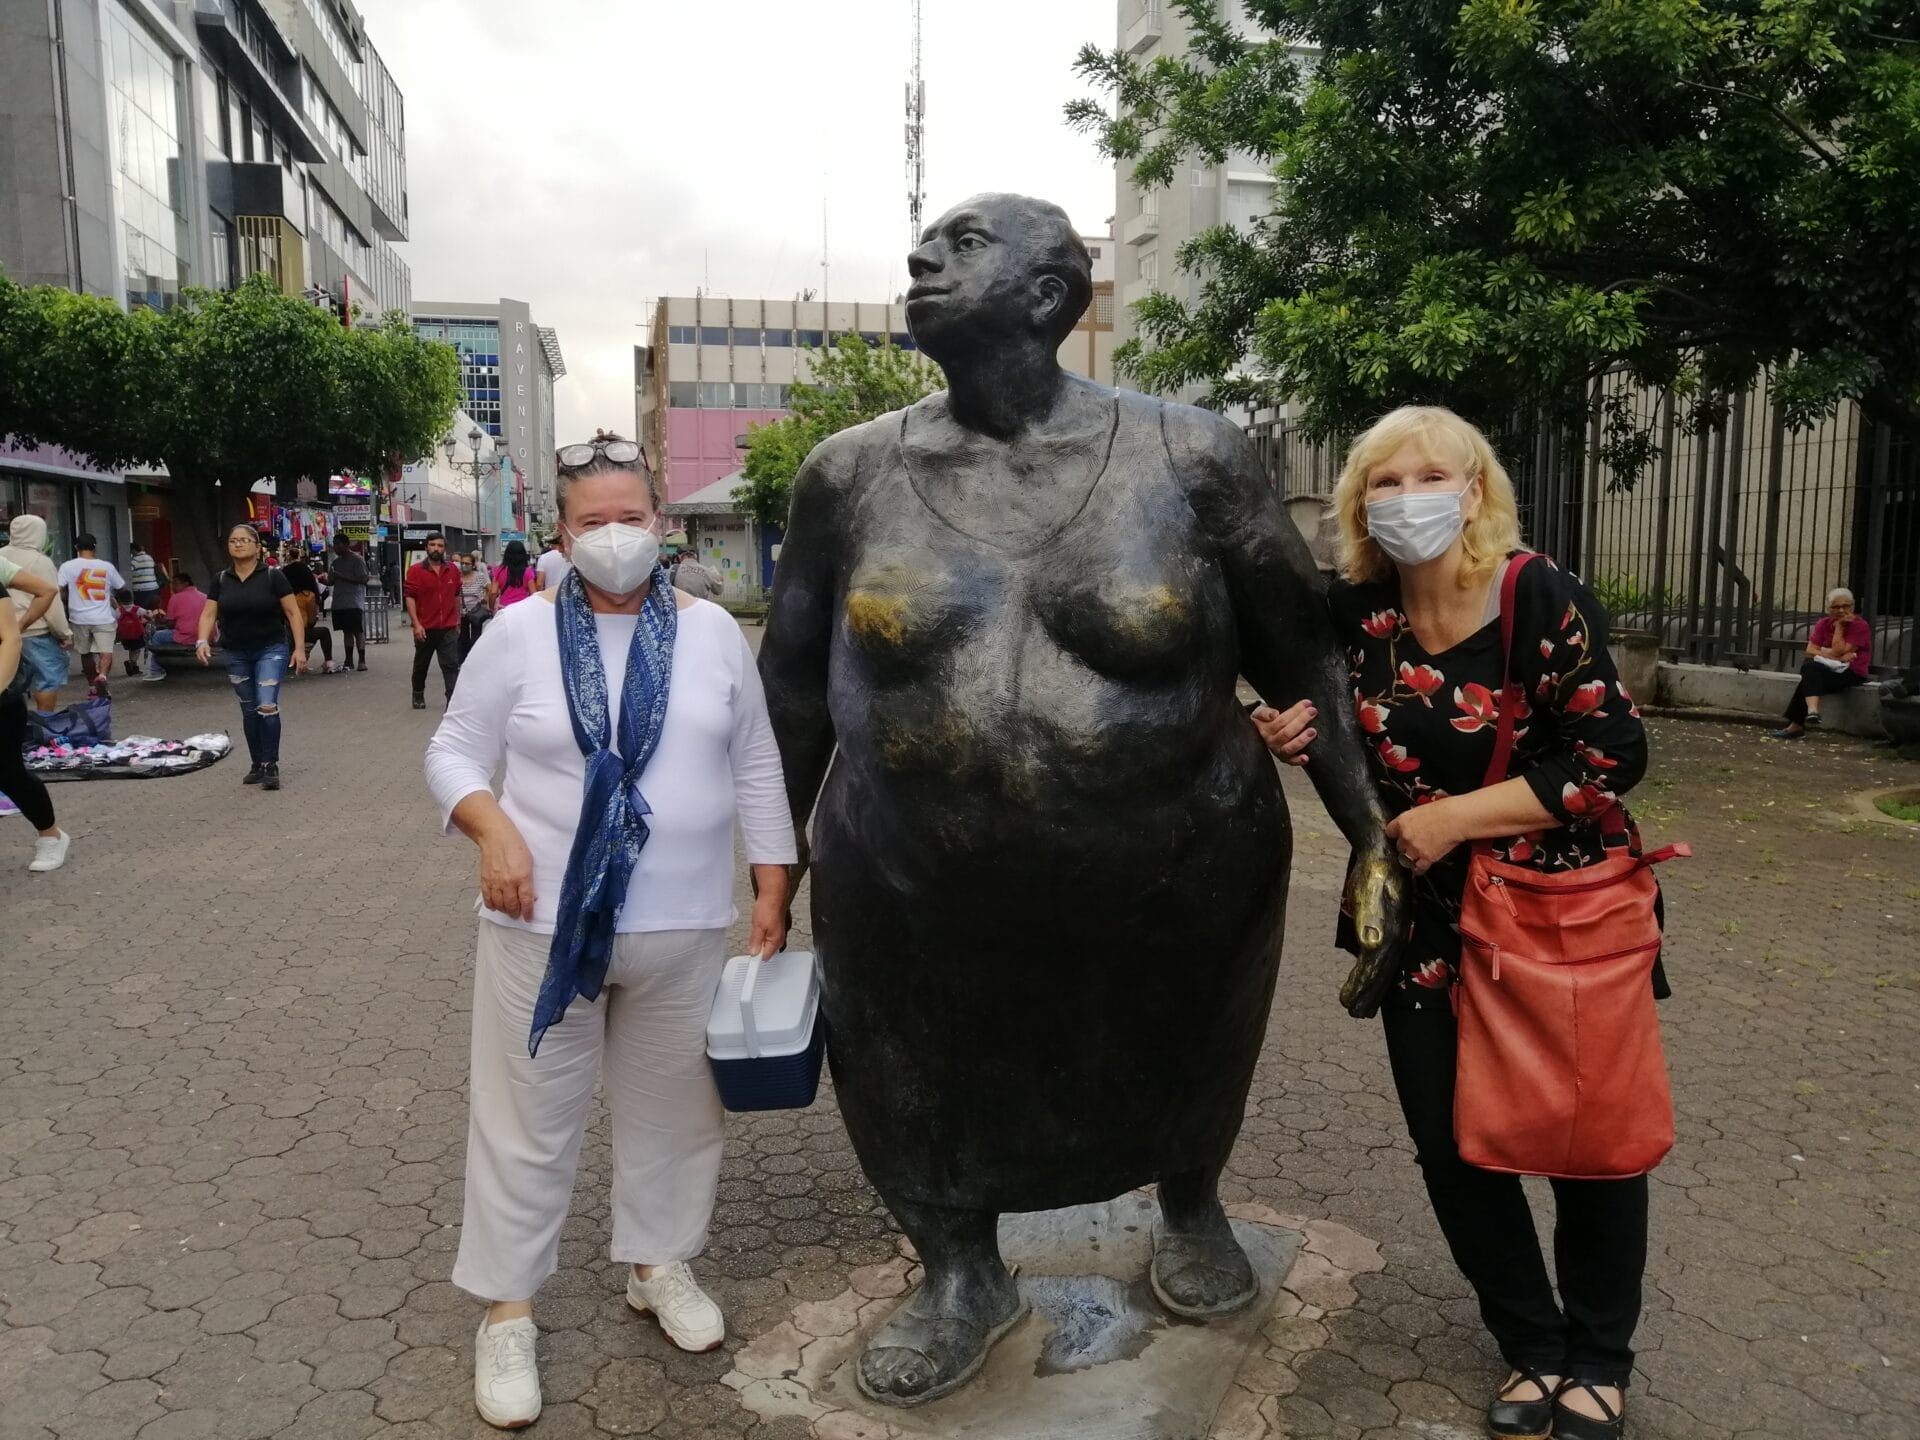 Zwei Frauen mit Masken stehen neben der Bronzestatue einer stehenden Figur auf einem städtischen Platz.